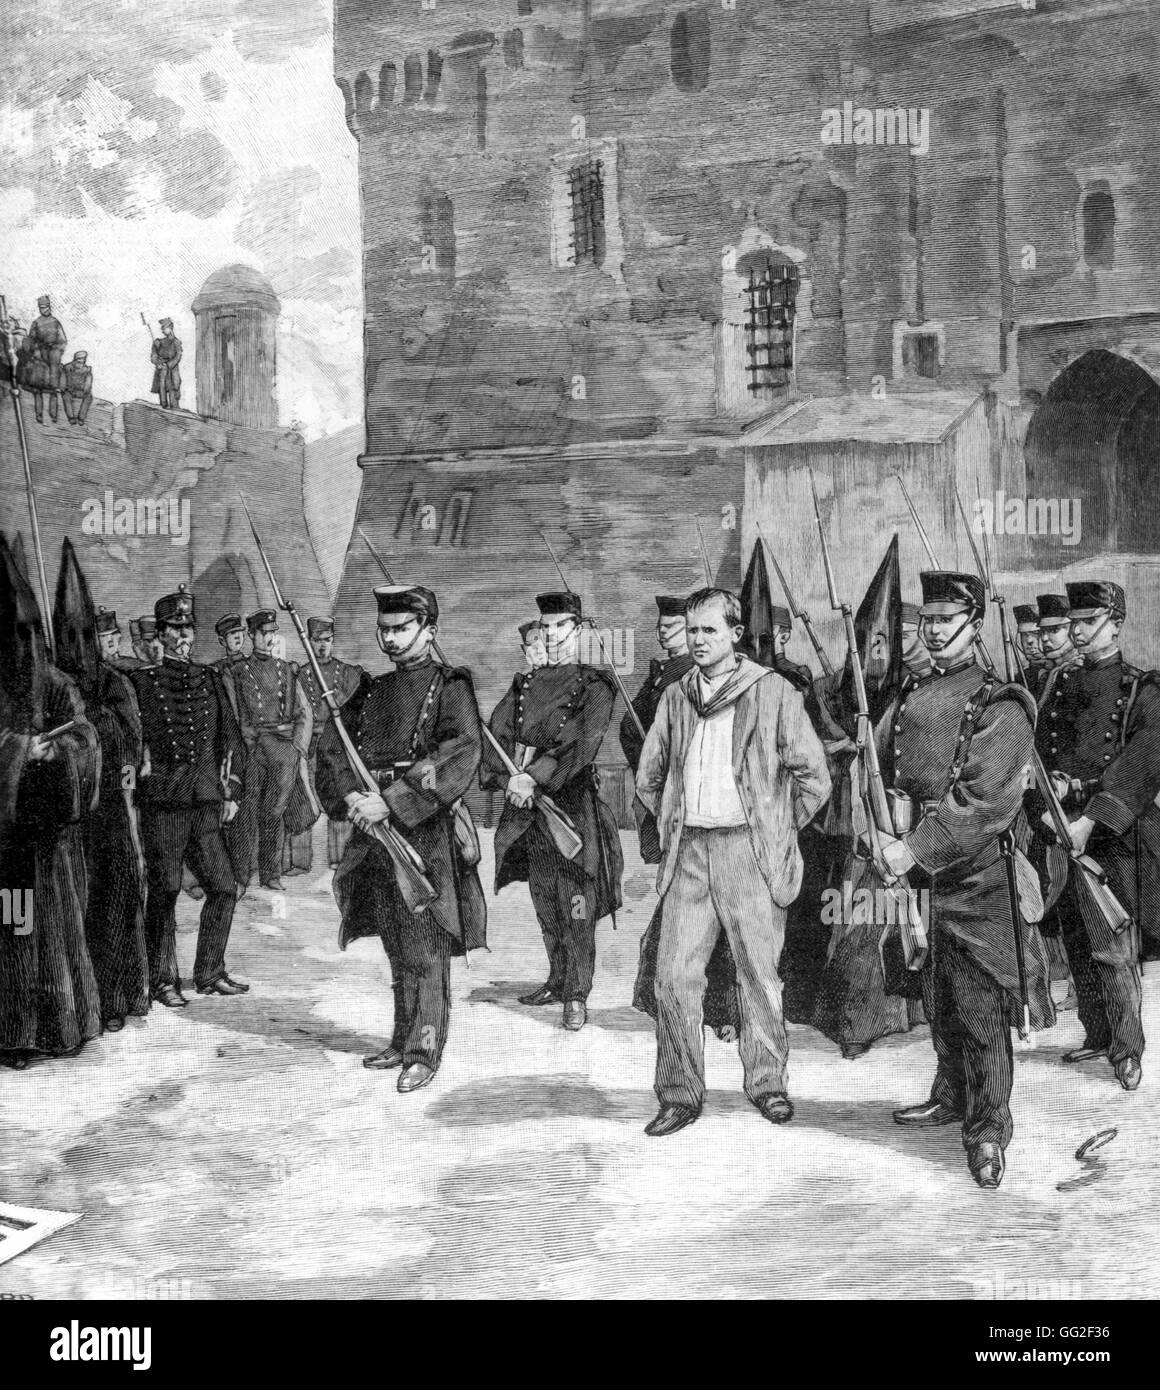 L'anarchiste Salvador condamné à mort. Il est tenu de sa cellule et conduit à une chapelle. Juillet 1894 Espagne Banque D'Images